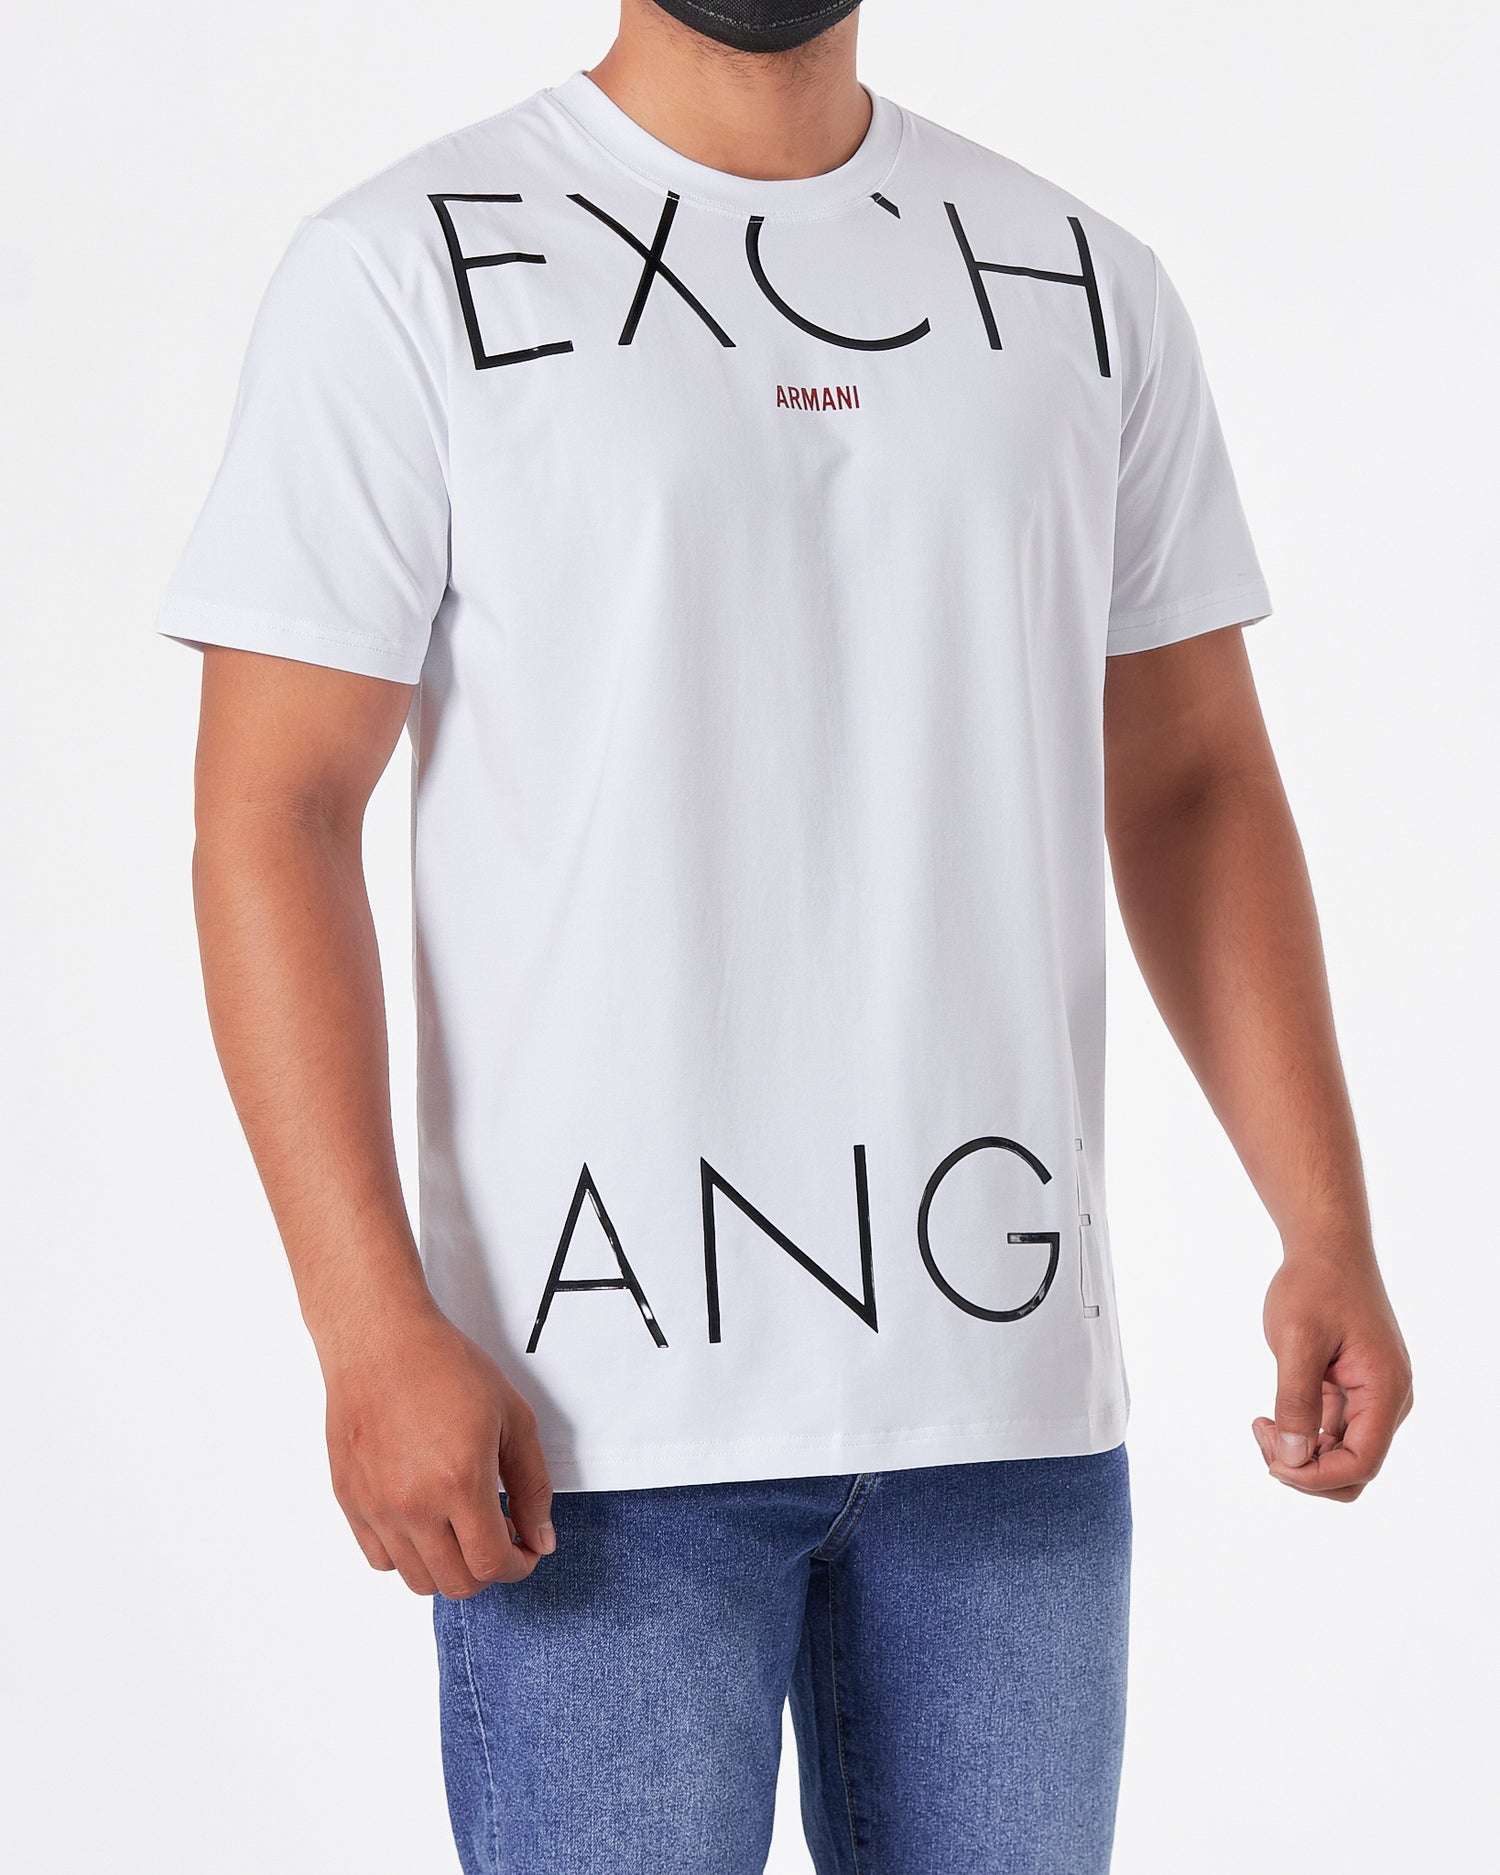 ARM Exchange Logo Printed Men White T-Shirt 15.90